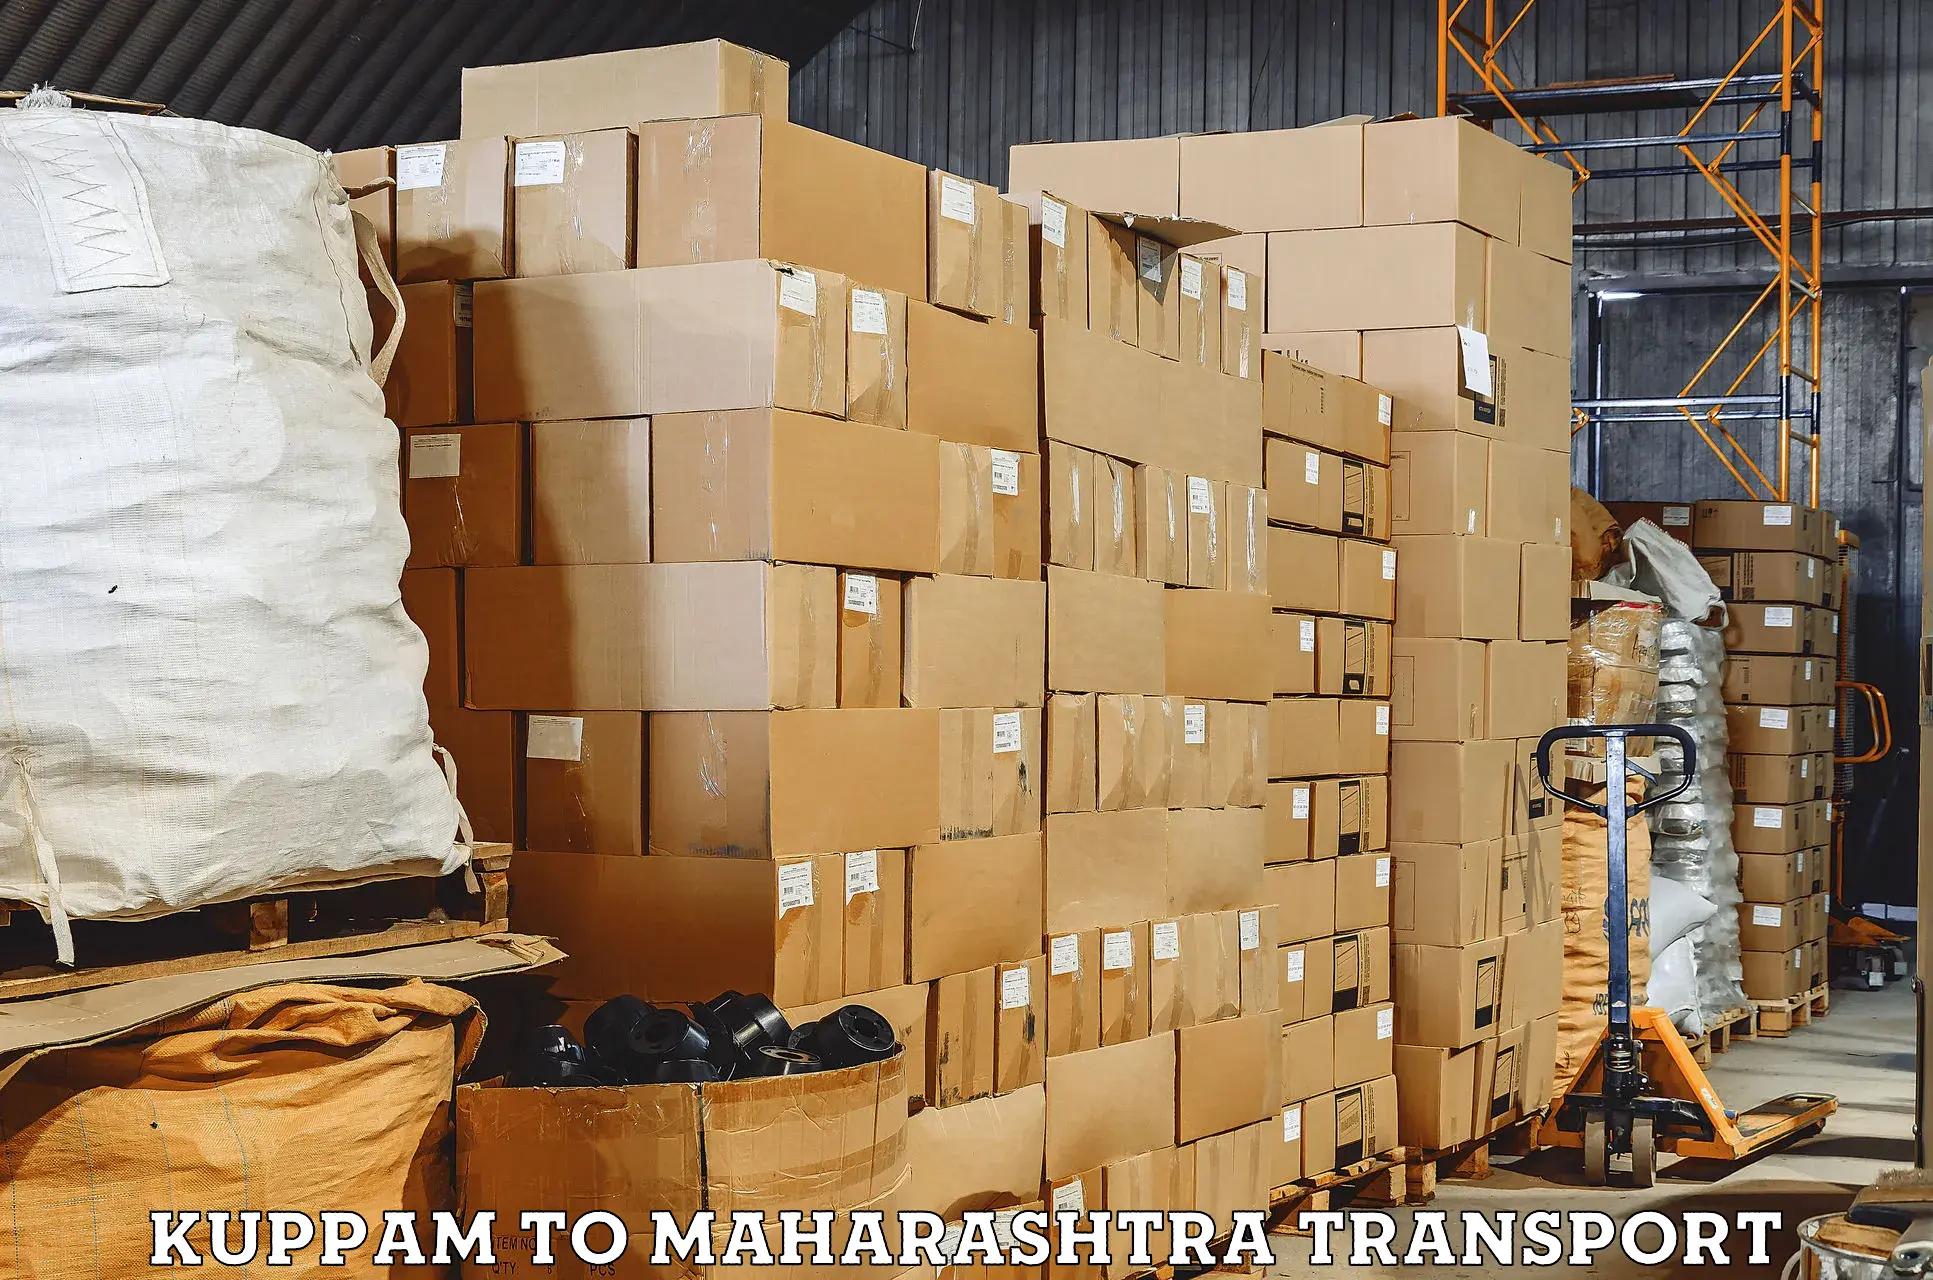 Truck transport companies in India Kuppam to Savitribai Phule Pune University